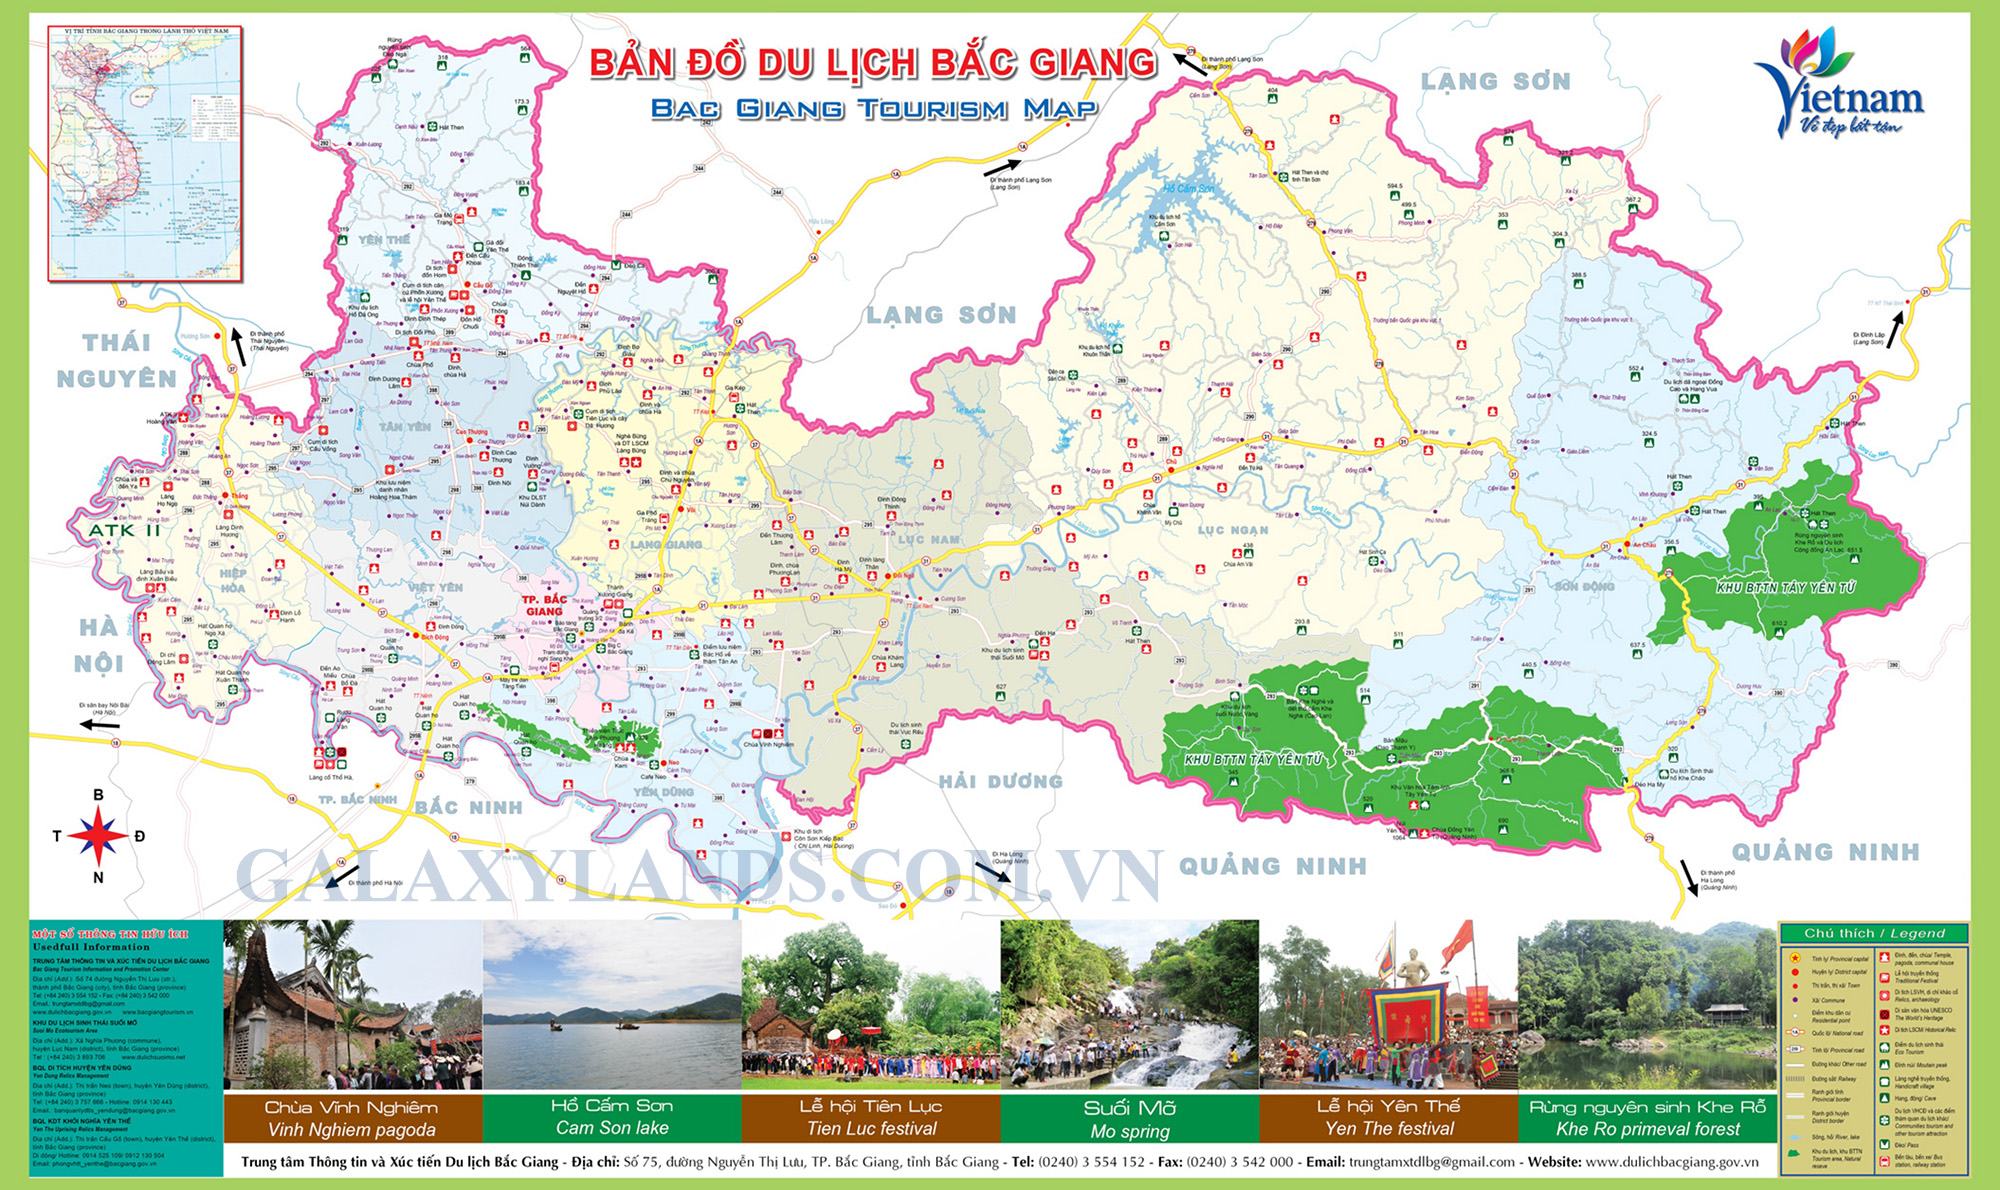 Bản đồ du lịch tỉnh Bắc Giang - Địa điểm du lịch tỉnh Bắc Giang